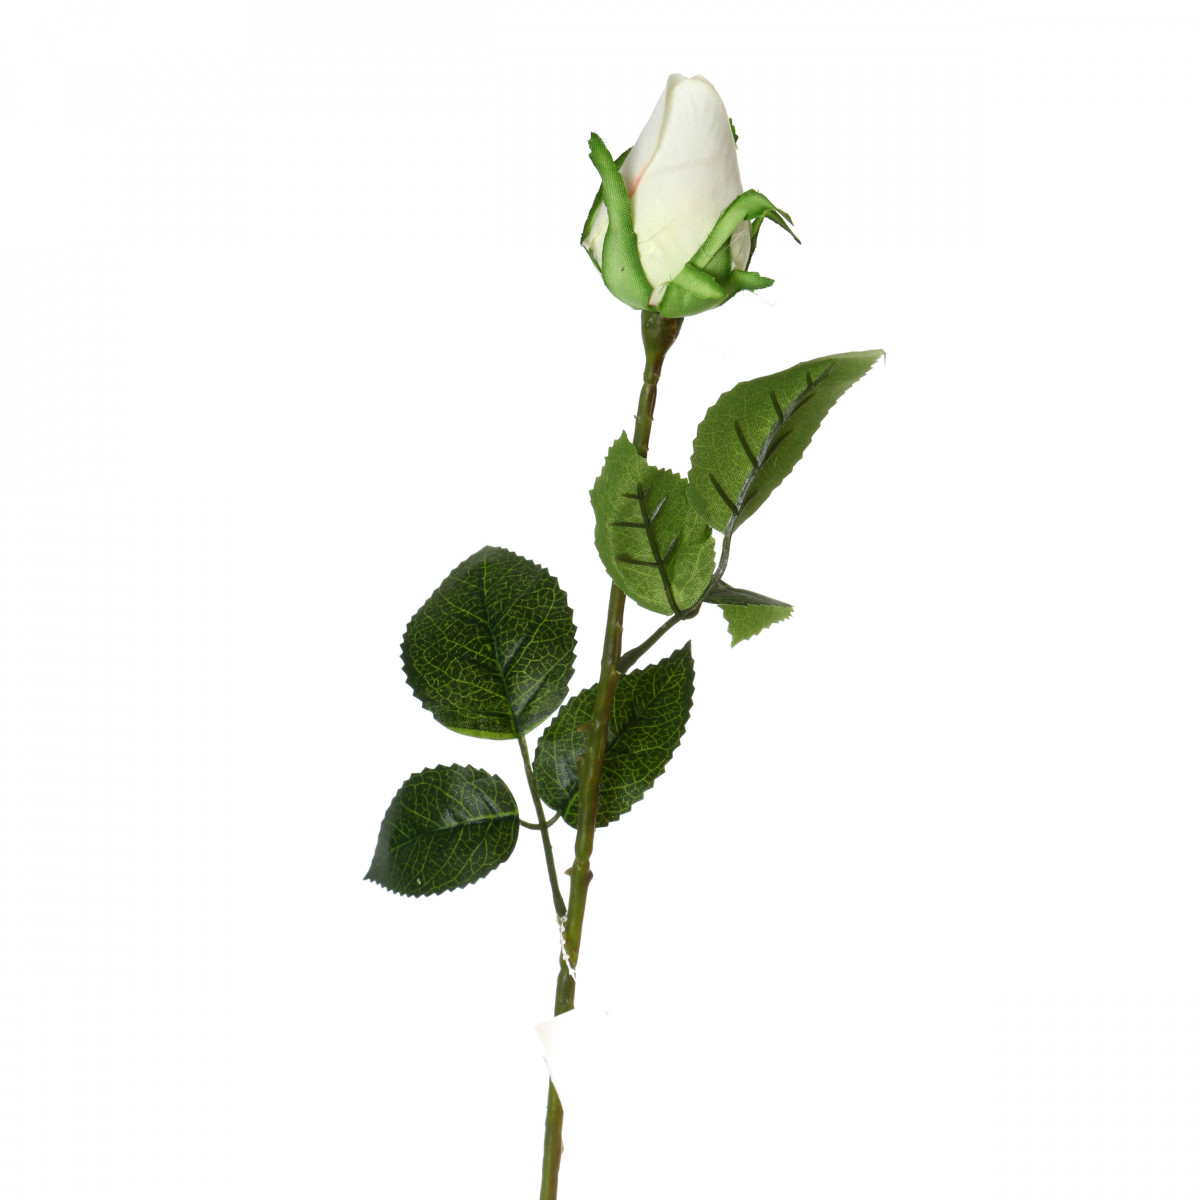 Искусственный цветок Sheenagh (53 см), размер 53 см arm302663 Искусственный цветок Sheenagh (53 см) - фото 1